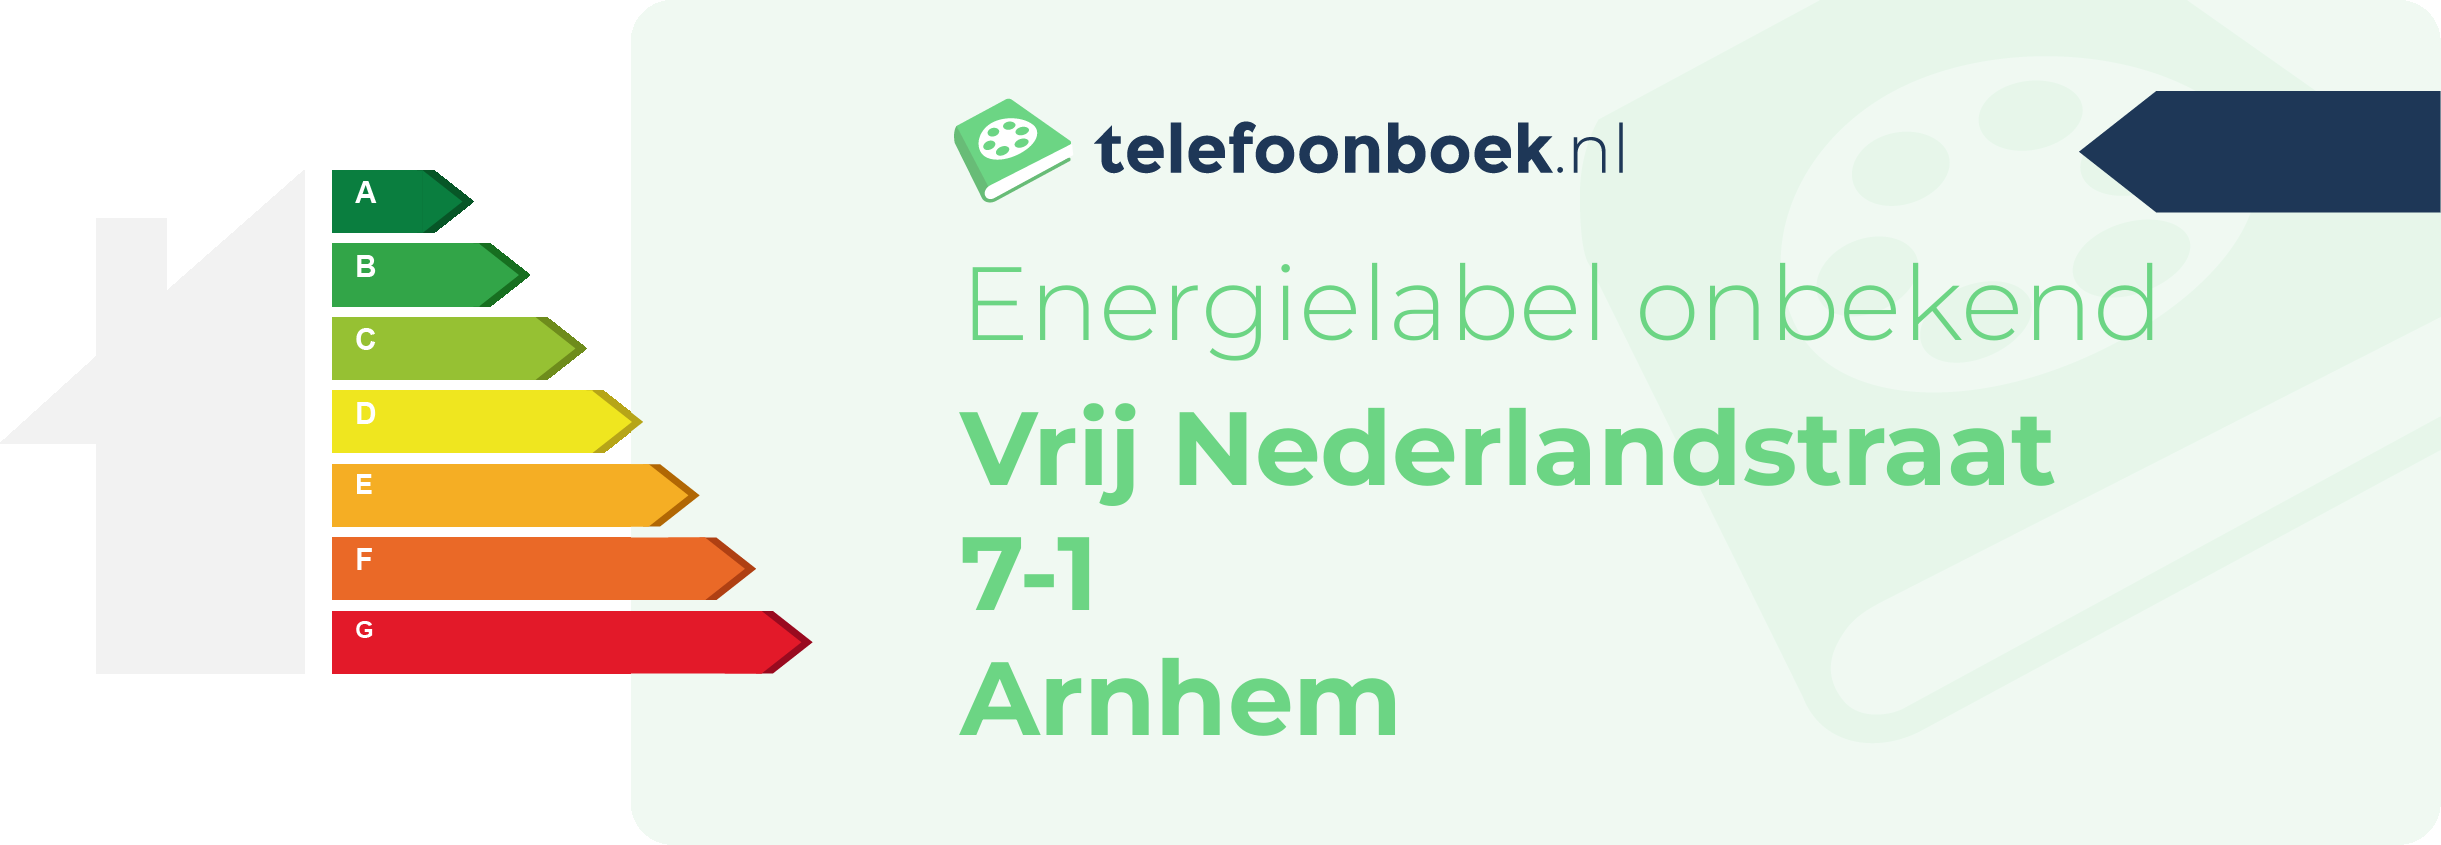 Energielabel Vrij Nederlandstraat 7-1 Arnhem